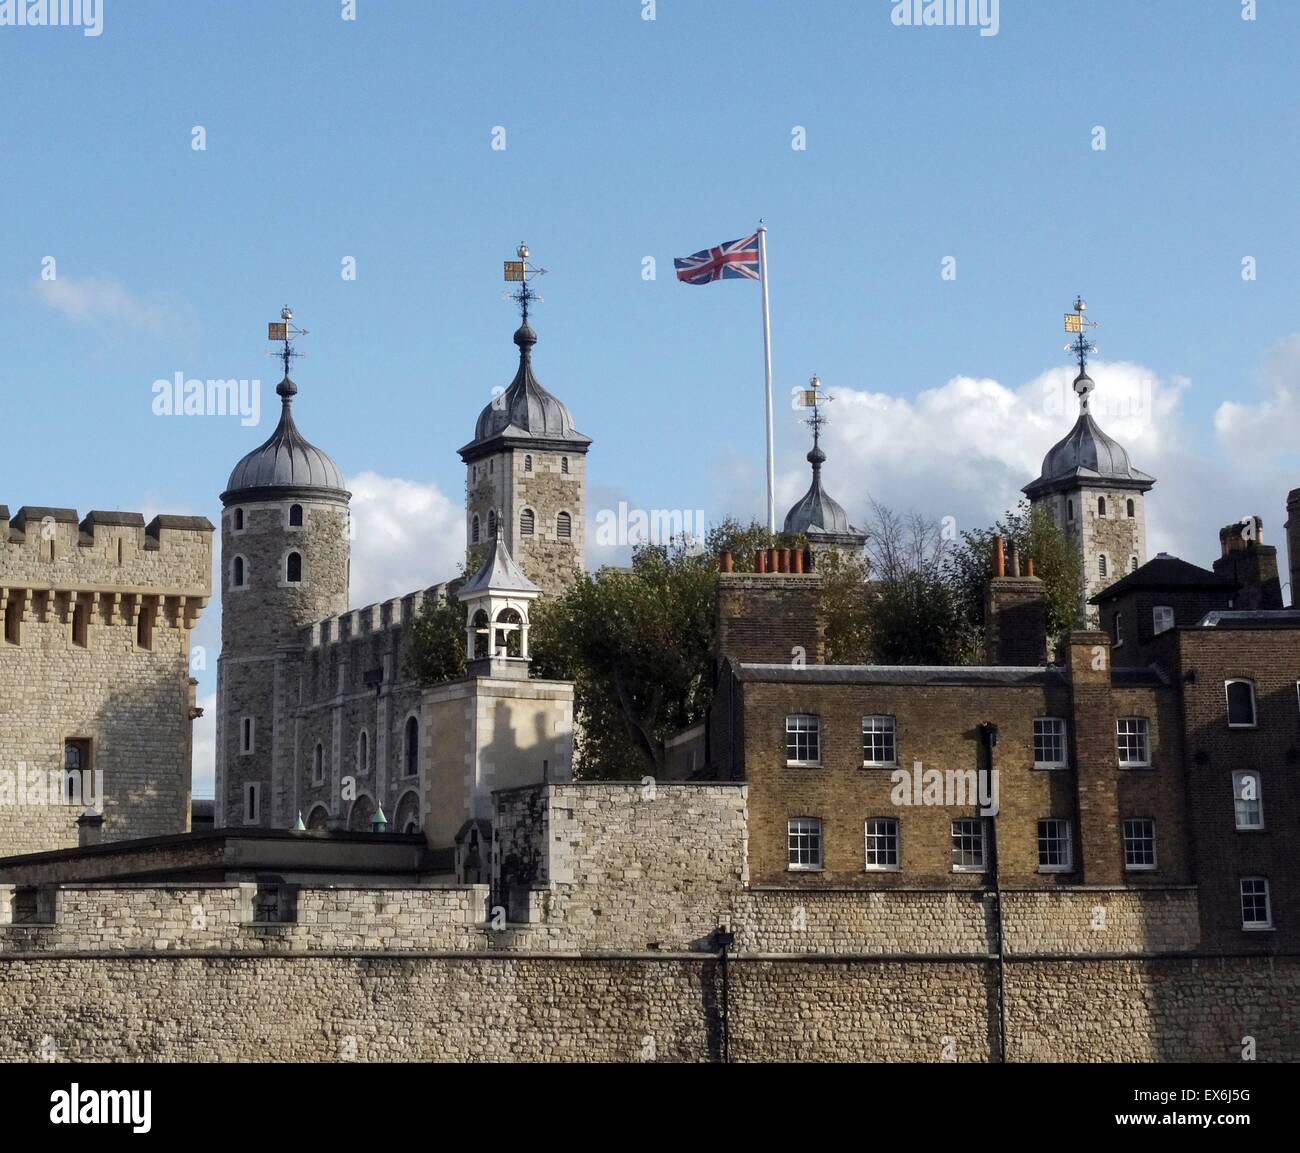 Fotografia a colori della Torre di Londra, un castello storico situato sulla riva nord del fiume Tamigi nel centro di Londra. La costruzione iniziò nel XI secolo. Datata 2014 Foto Stock